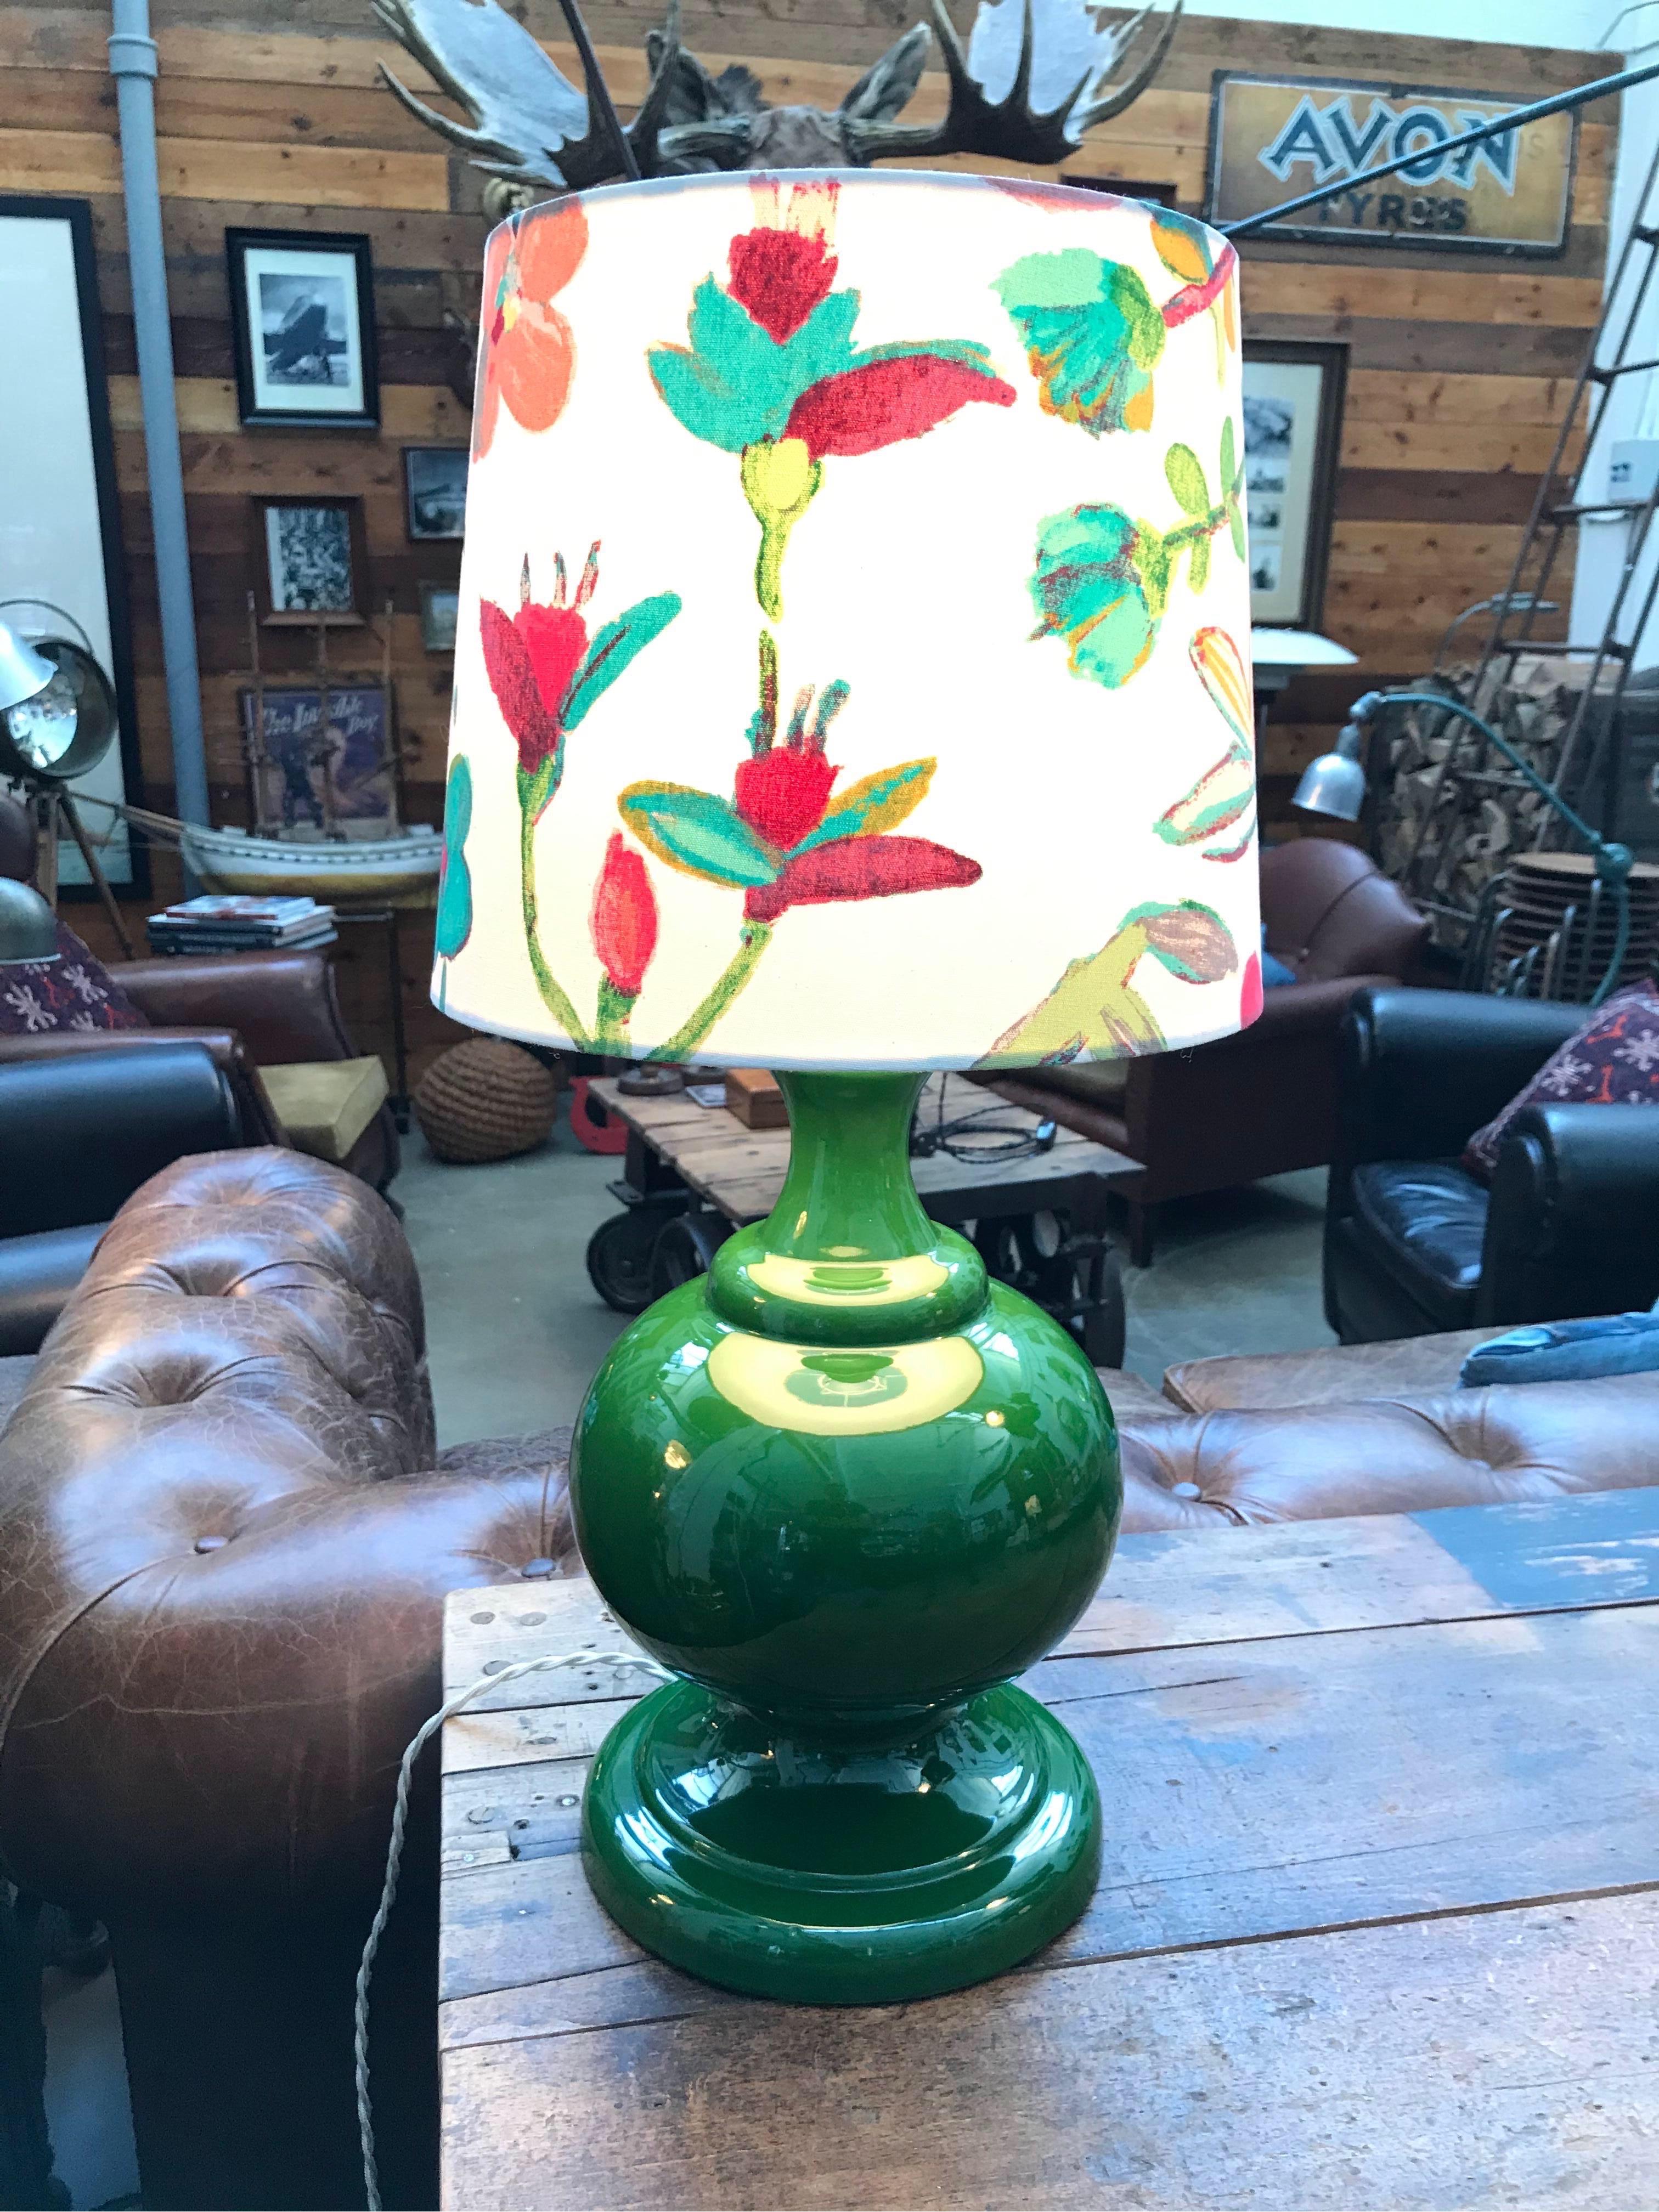 Lampe de table vintage en porcelaine des années 1960
Cette lampe de table rétro a de grandes proportions et une couleur frappante.
Recâblé et prêt à être utilisé.
Peut être équipé d'une prise UE ou US.
Une belle lampe d'une grande période de